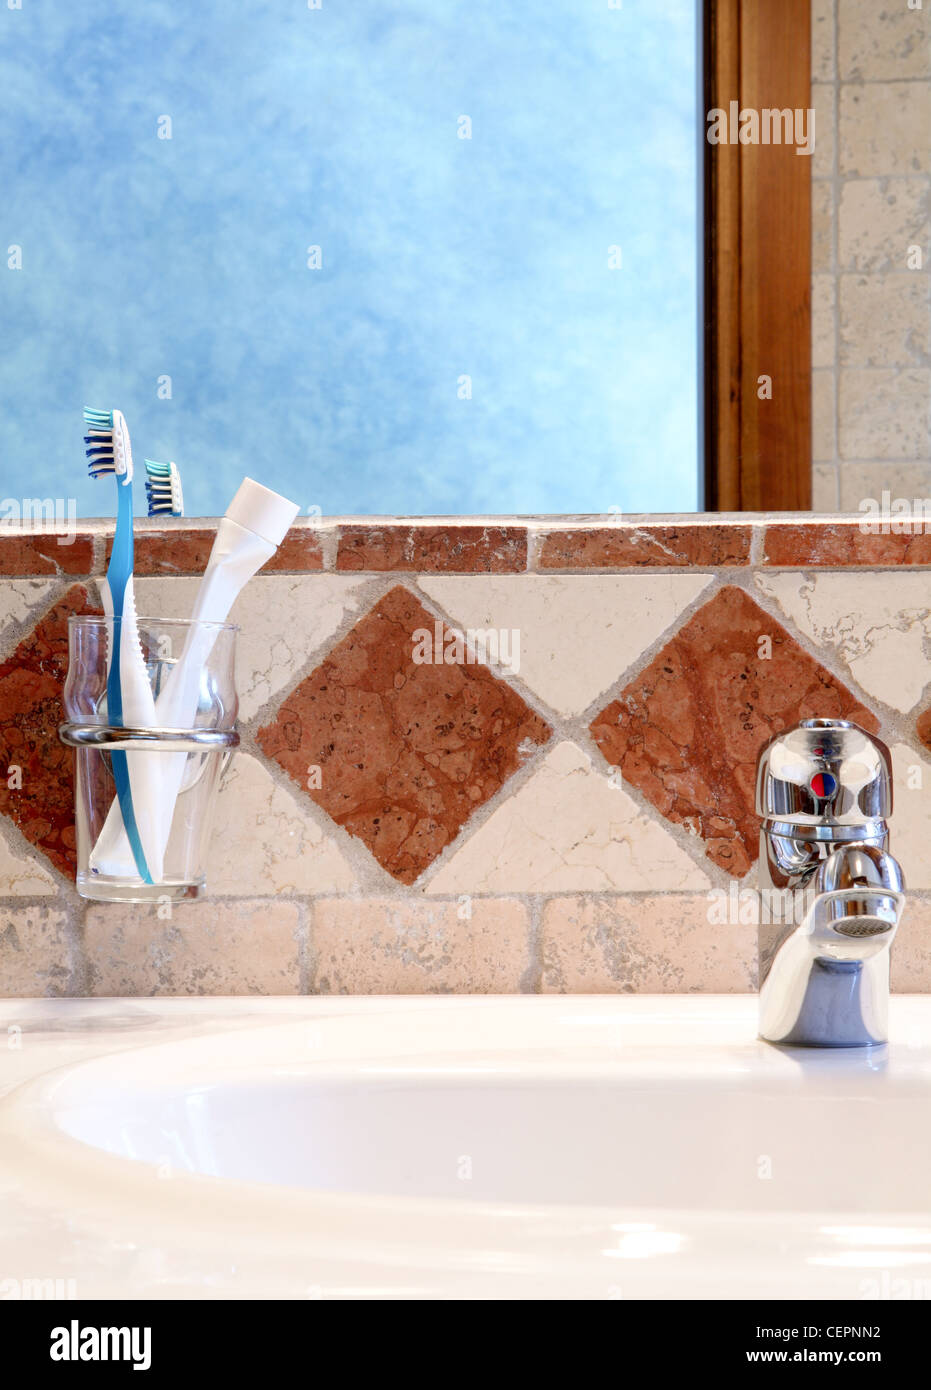 Salle de bains : miroir, lavabo, eau, brosses à dents Banque D'Images